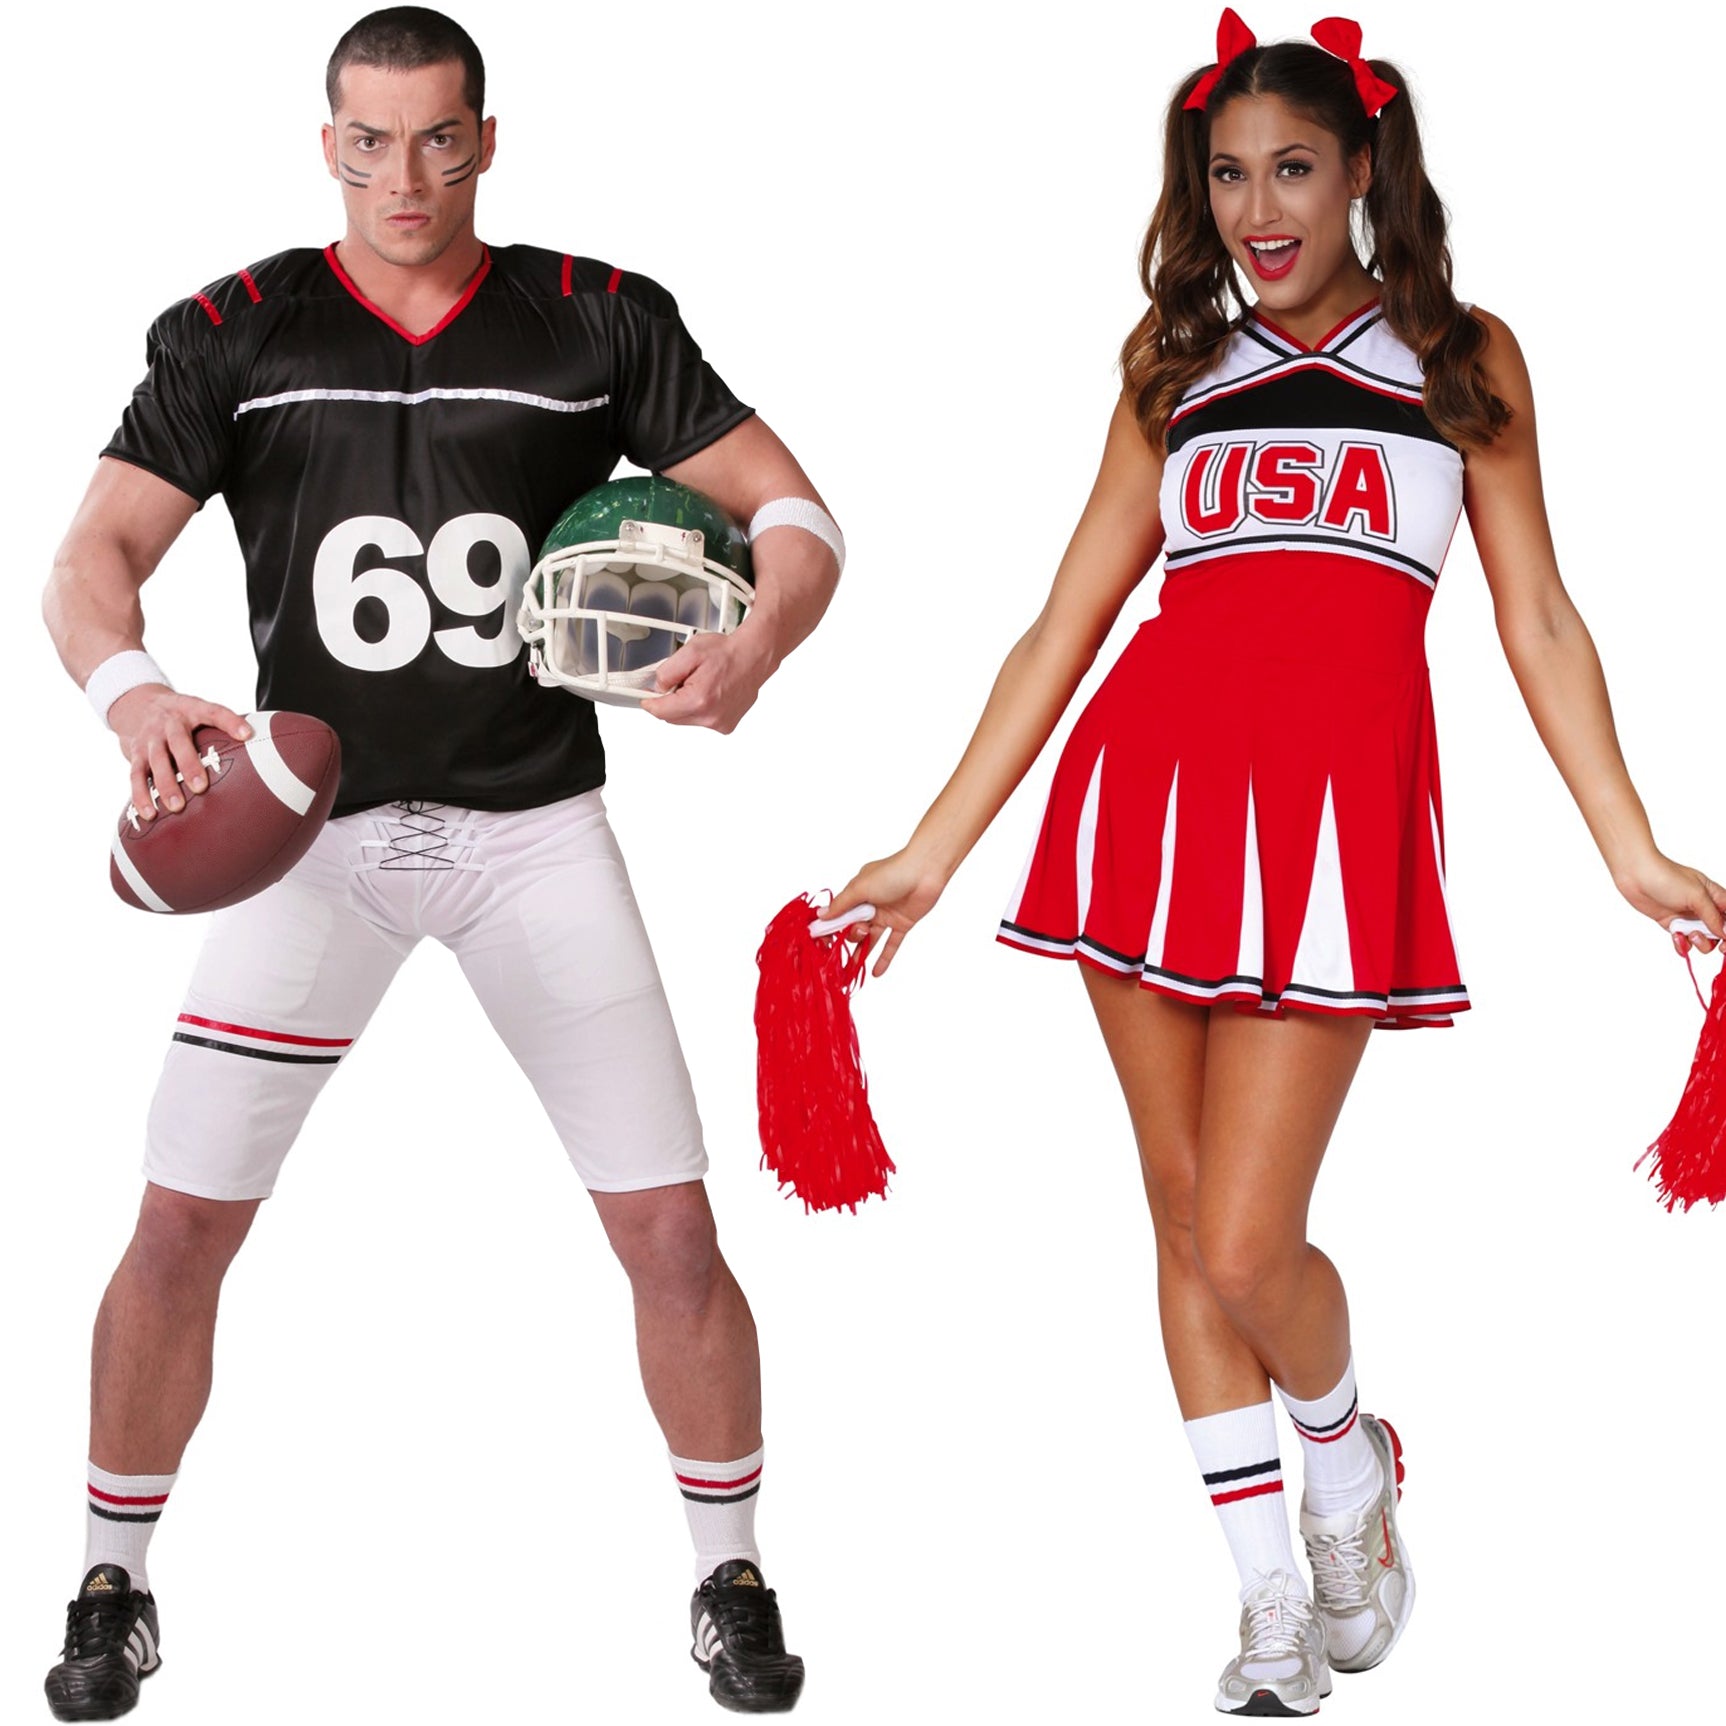 Acquista: Costumi di coppia da Cheerleader e Giocatore